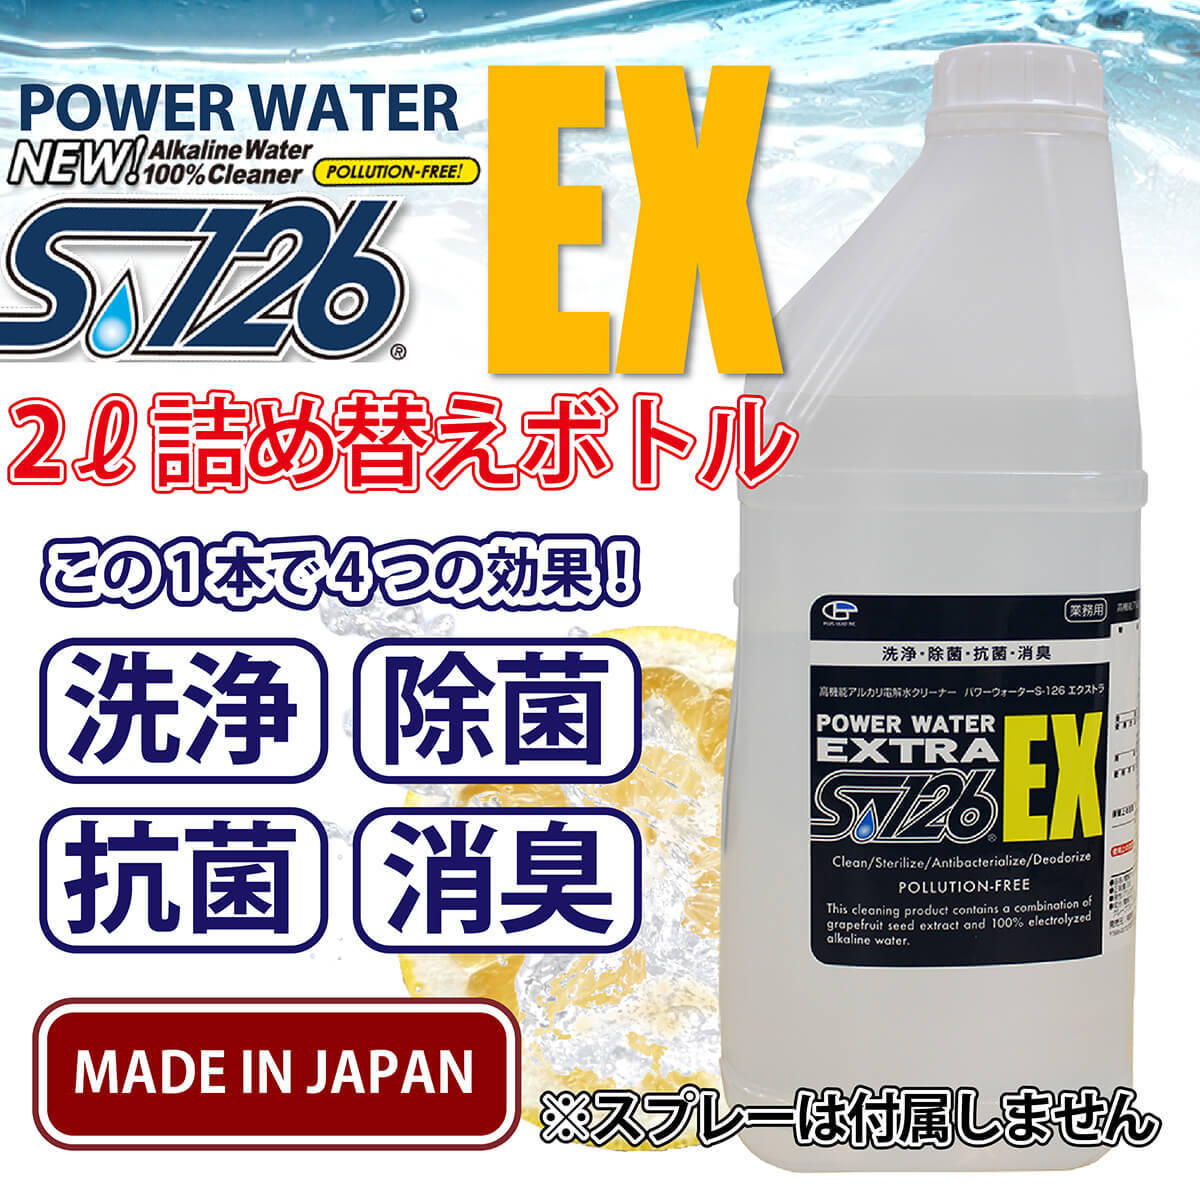 パワーウォーター S-126 エクストラ【2L詰め替え用】高機能 アルカリ電解水クリーナー 洗浄剤 除菌 抗菌 消臭 安心の日本製 ijl5otJMOwxAEIU0-34162 その他